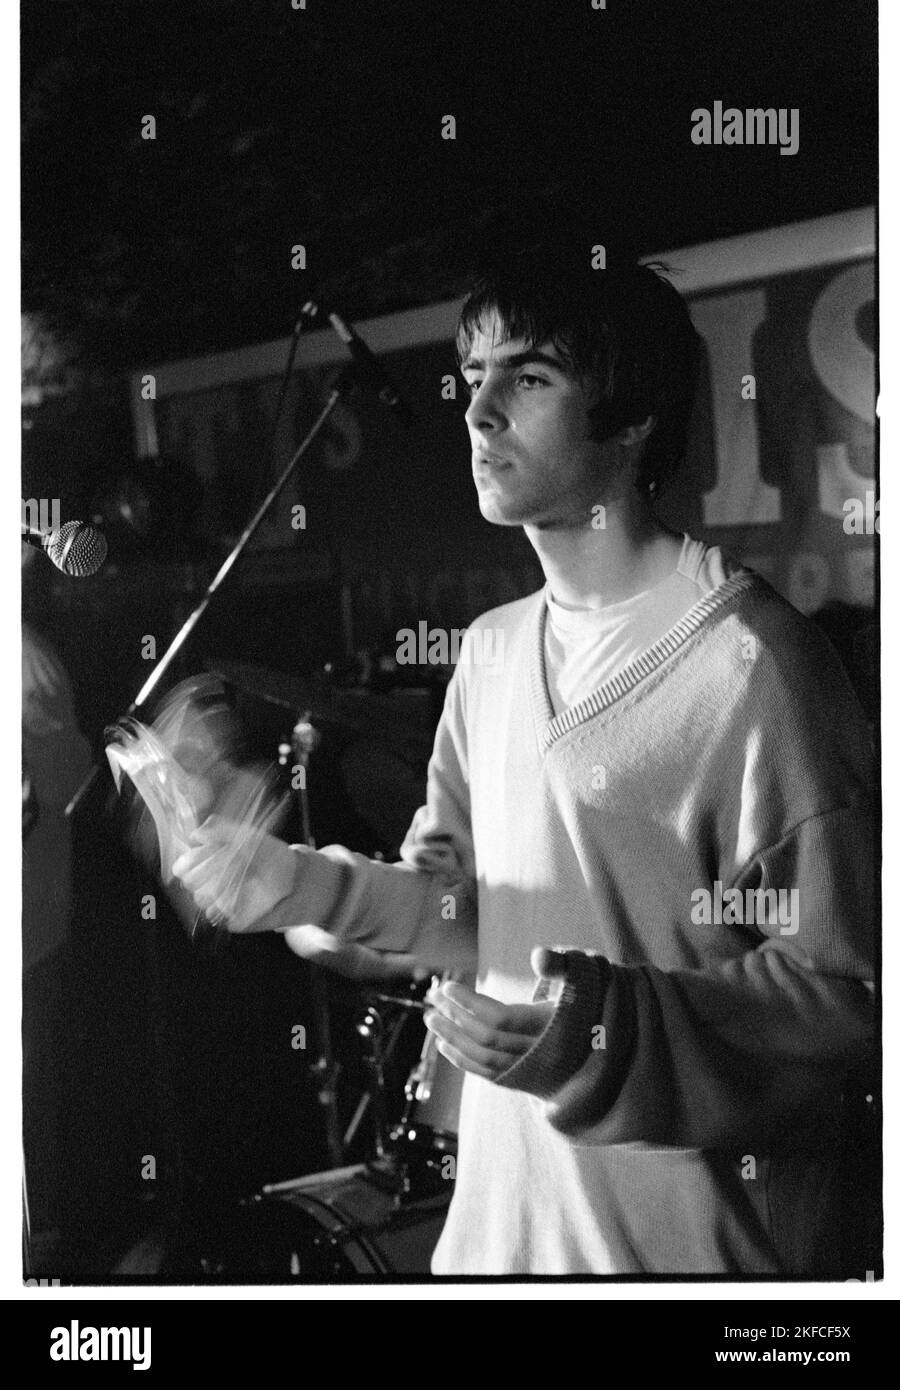 OASIS, FIRST UK HEADLINE TOUR, 1994: Liam Gallagher of Oasis at the Legendary TJs a Newport, Galles, 3 maggio 1994. Fotografia: Rob Watkins. Questo è stato il primo tour nazionale della band a sostegno del loro secondo singolo Shakermaker. Foto Stock